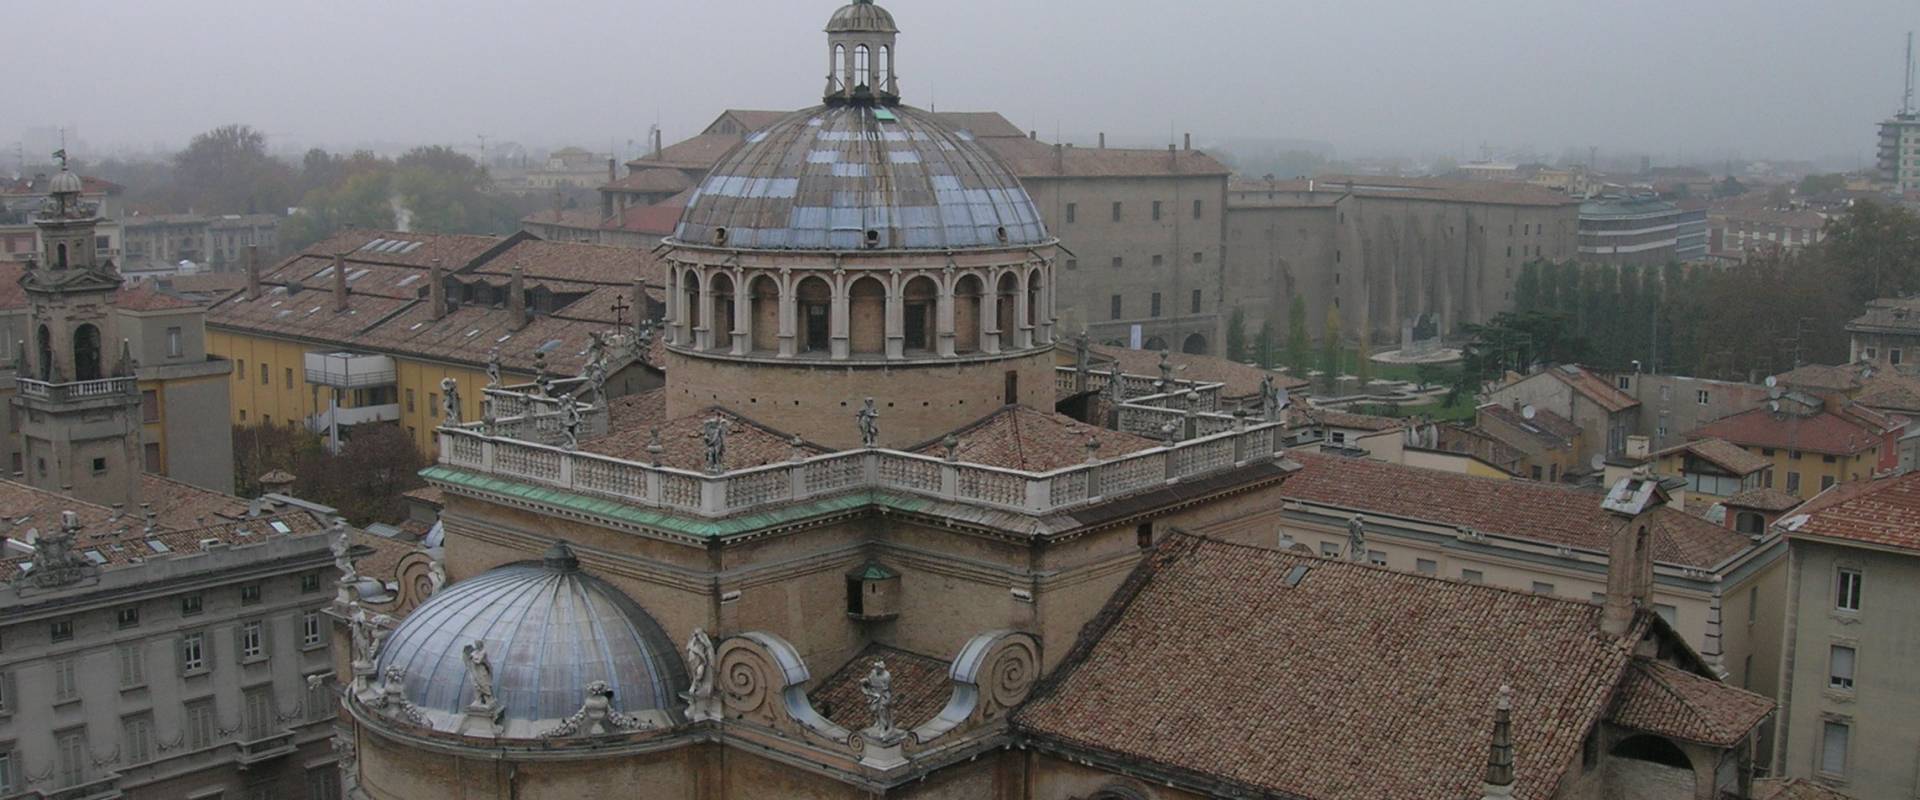 Parma, Santa Maria della Steccata vista dal palazzo del Governatore photo by Brdlgu